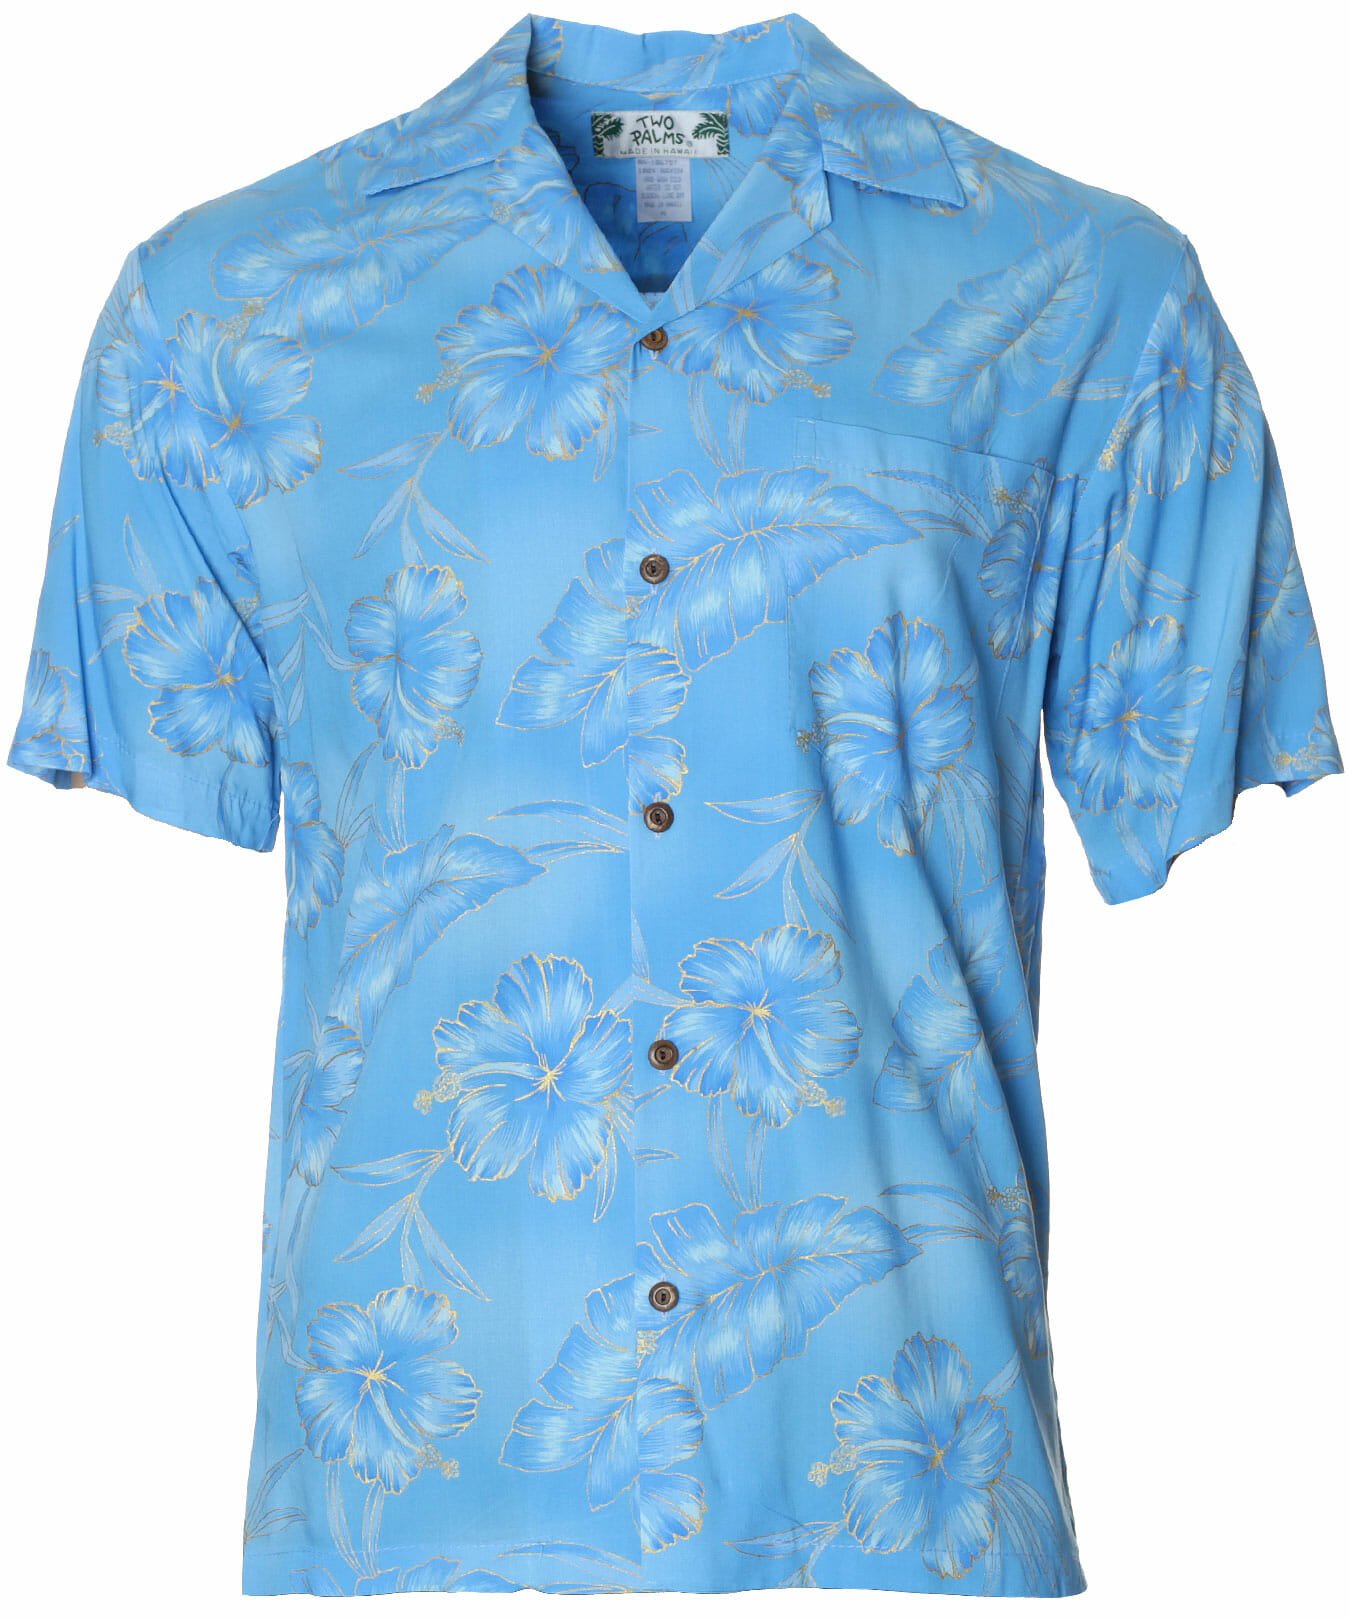 Kapalua Hawaiian Aloha Shirt Light Blue